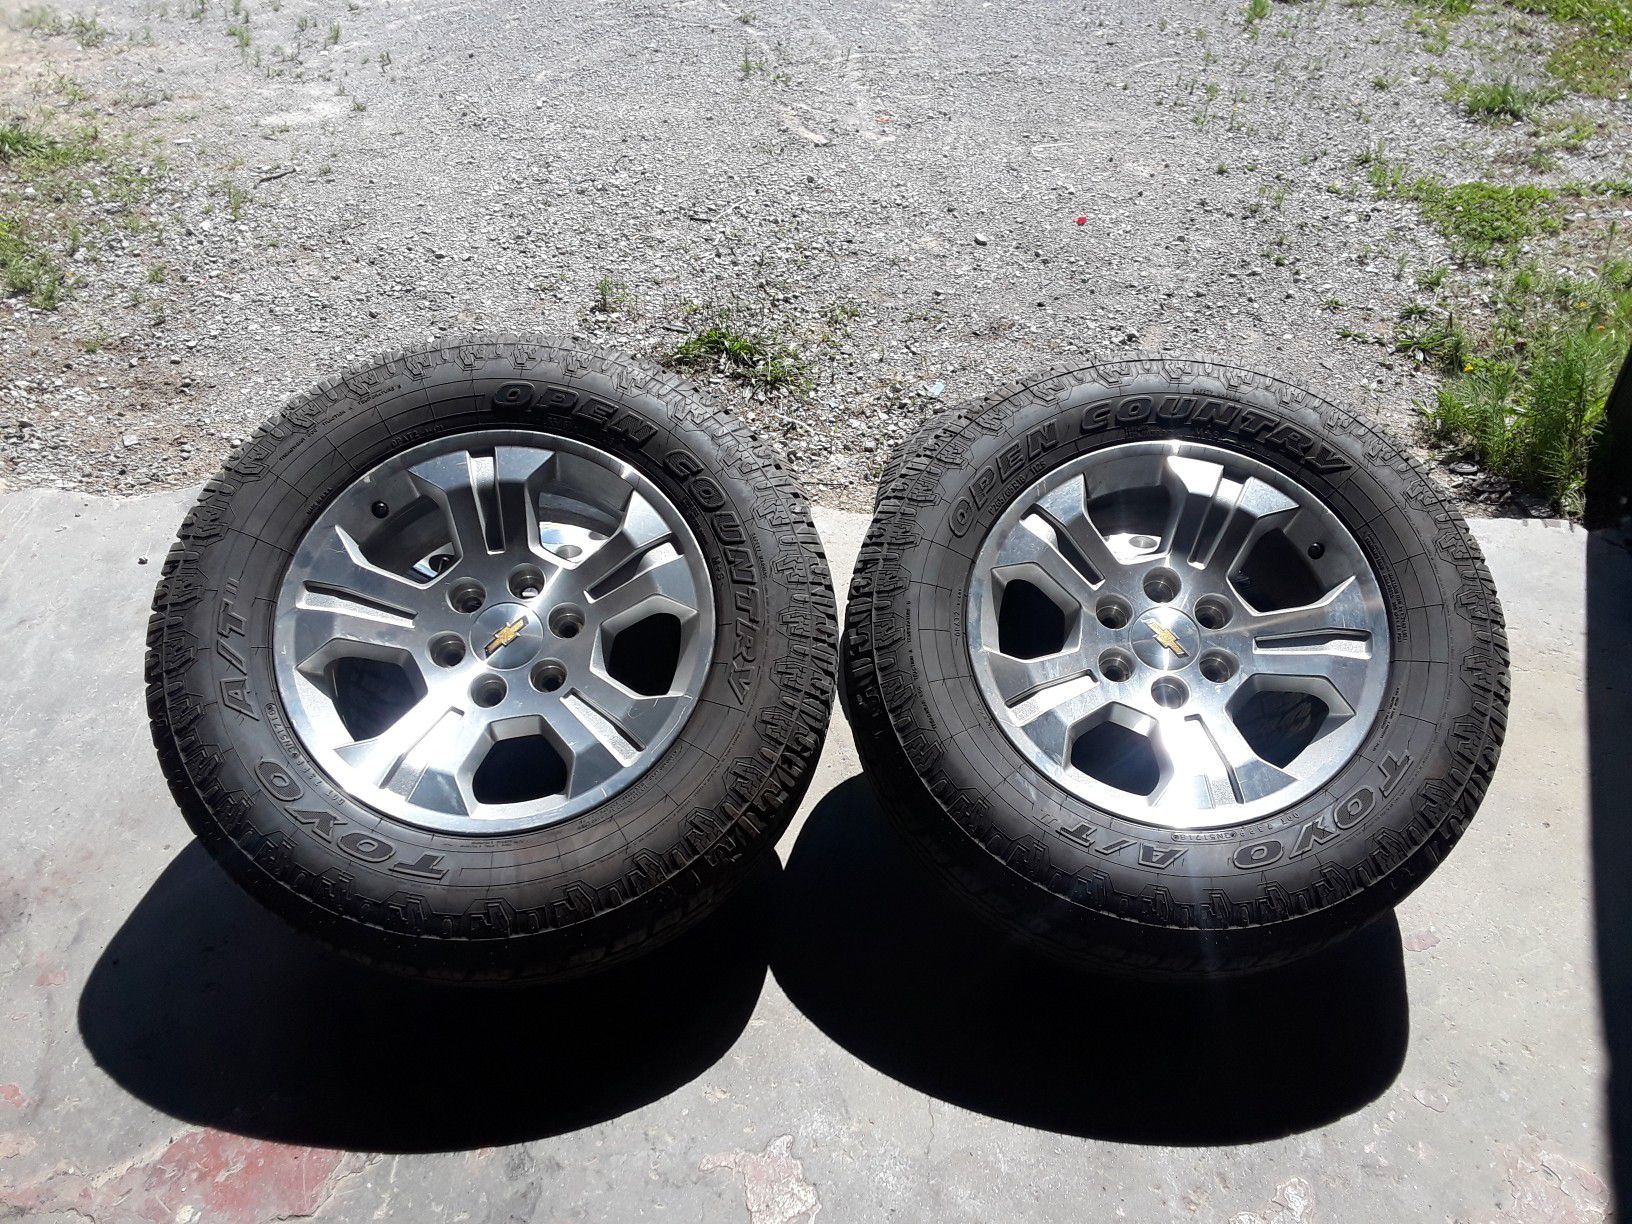 Chevy silverado wheels and tires